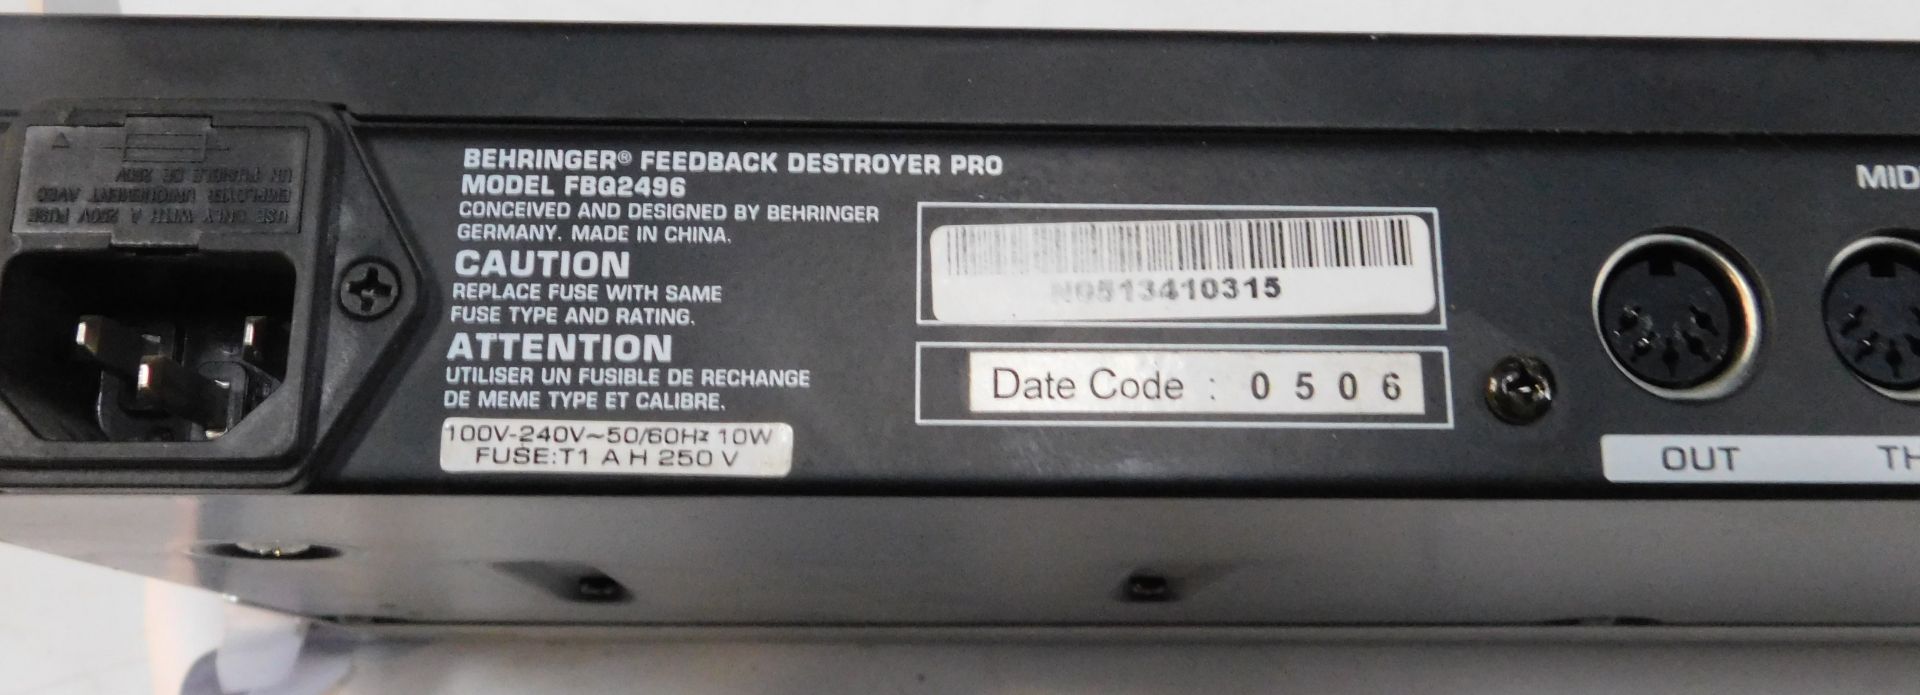 Botex DR-512 DMX Recorder, Pulse MPS Master DJ Player, Behringer Feedback Destroyer Pro, Model - Image 15 of 16